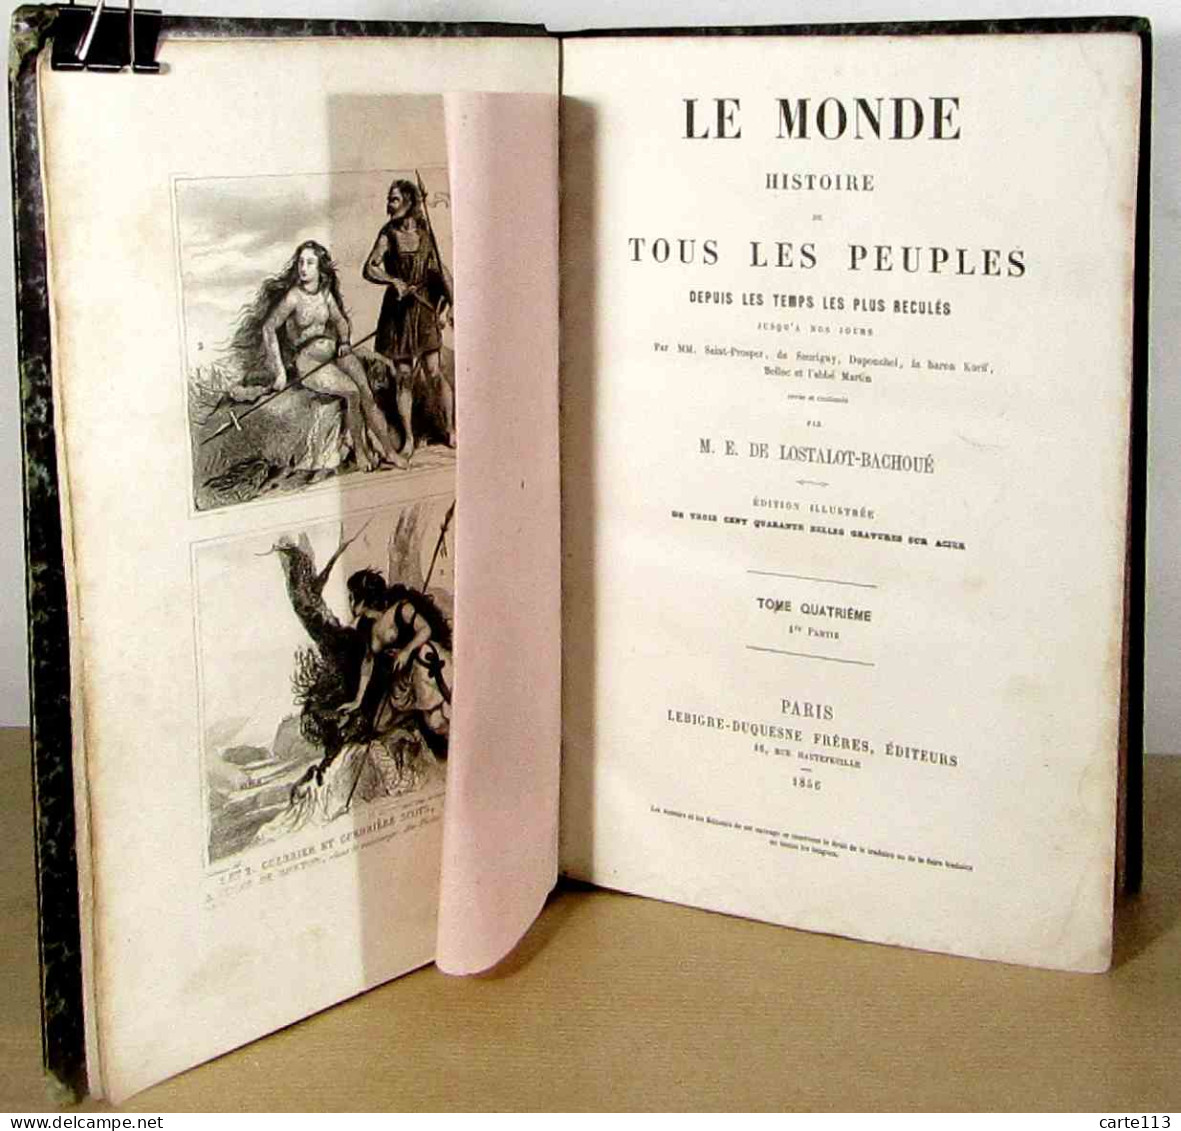 LOSTALOT - BACHOUE M.E. - LE MONDE - HISTOIRE DE TOUS LES PEUPLES DEPUIS LES TEMPS LES PLUS REC - 1801-1900